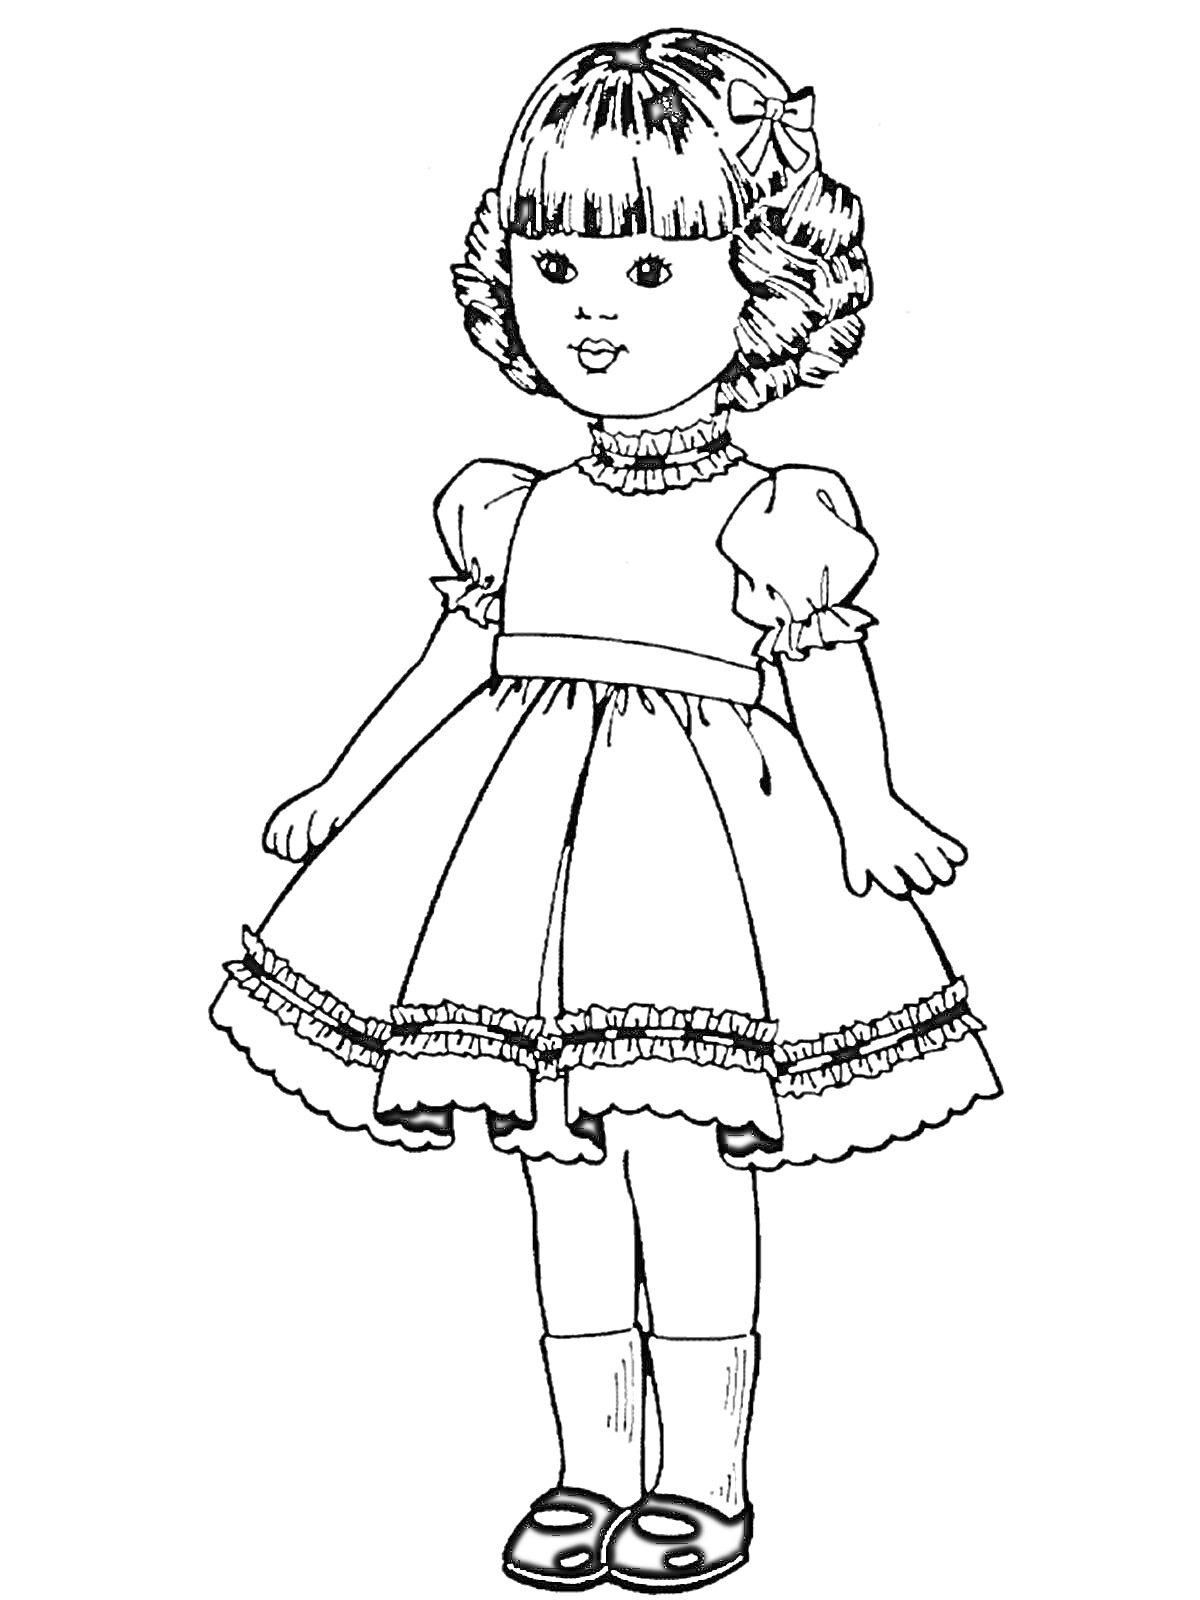 Кукла в платье с бантом в волосах